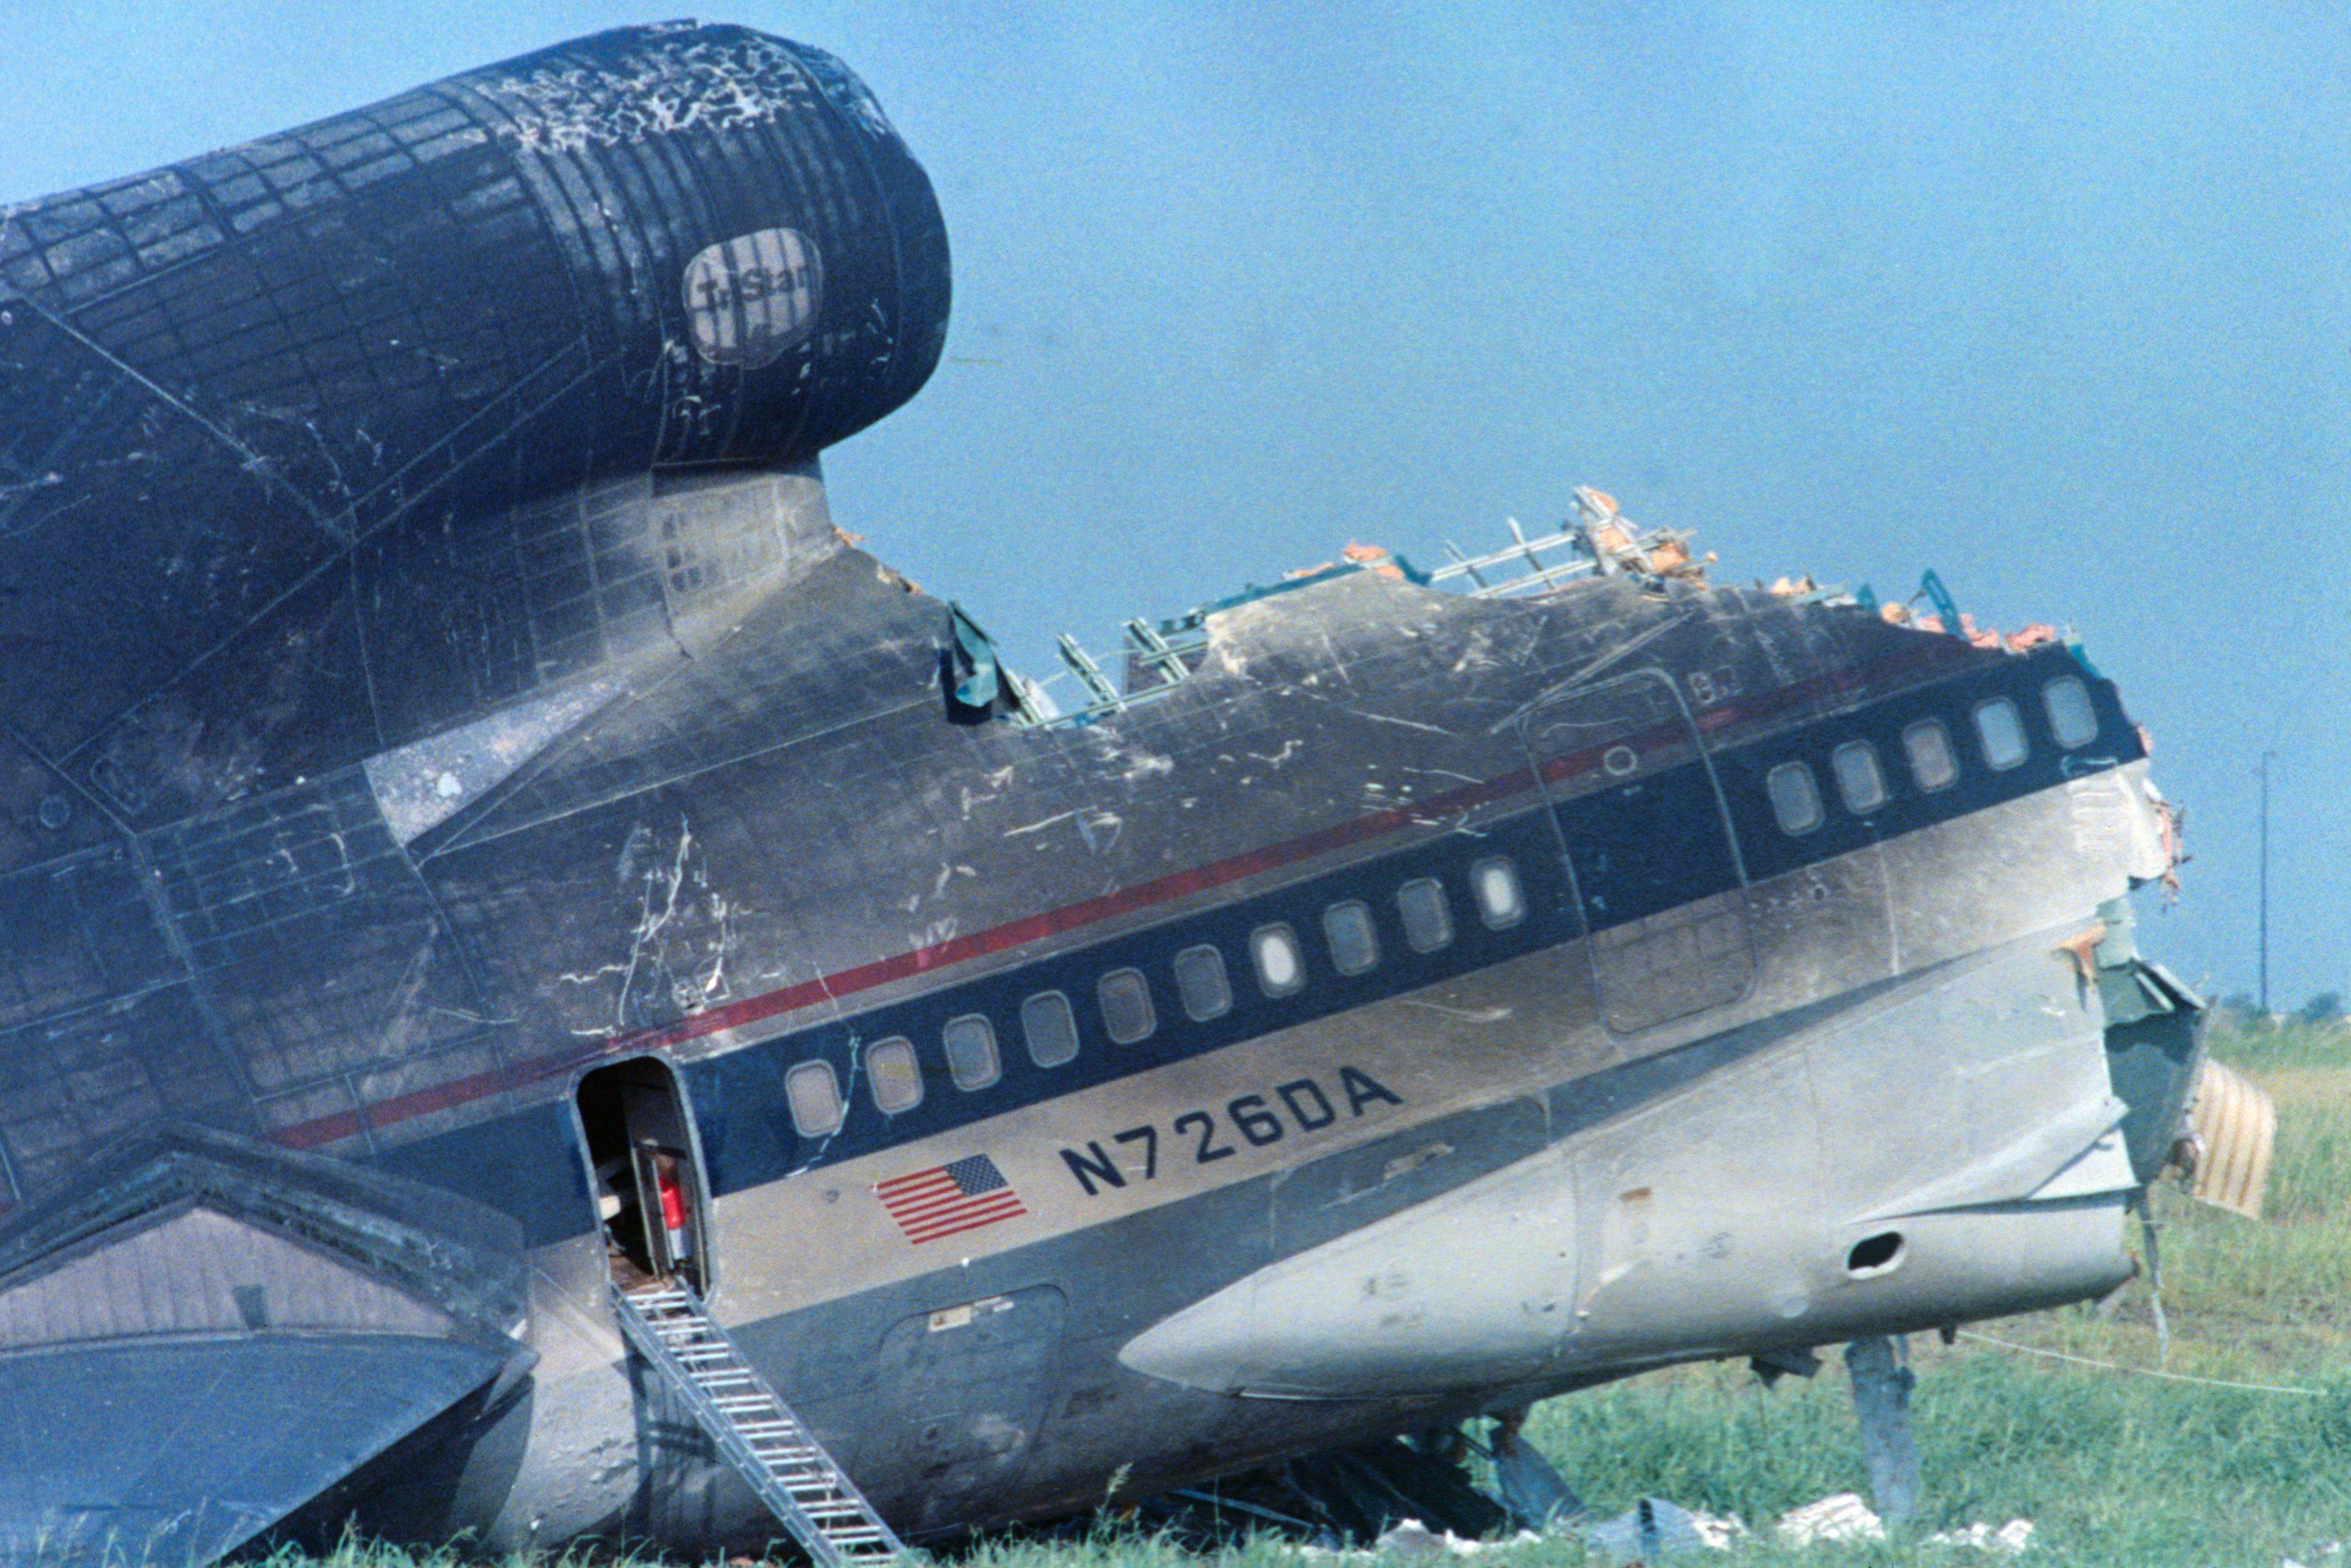 Delta L-1011 plane after crash